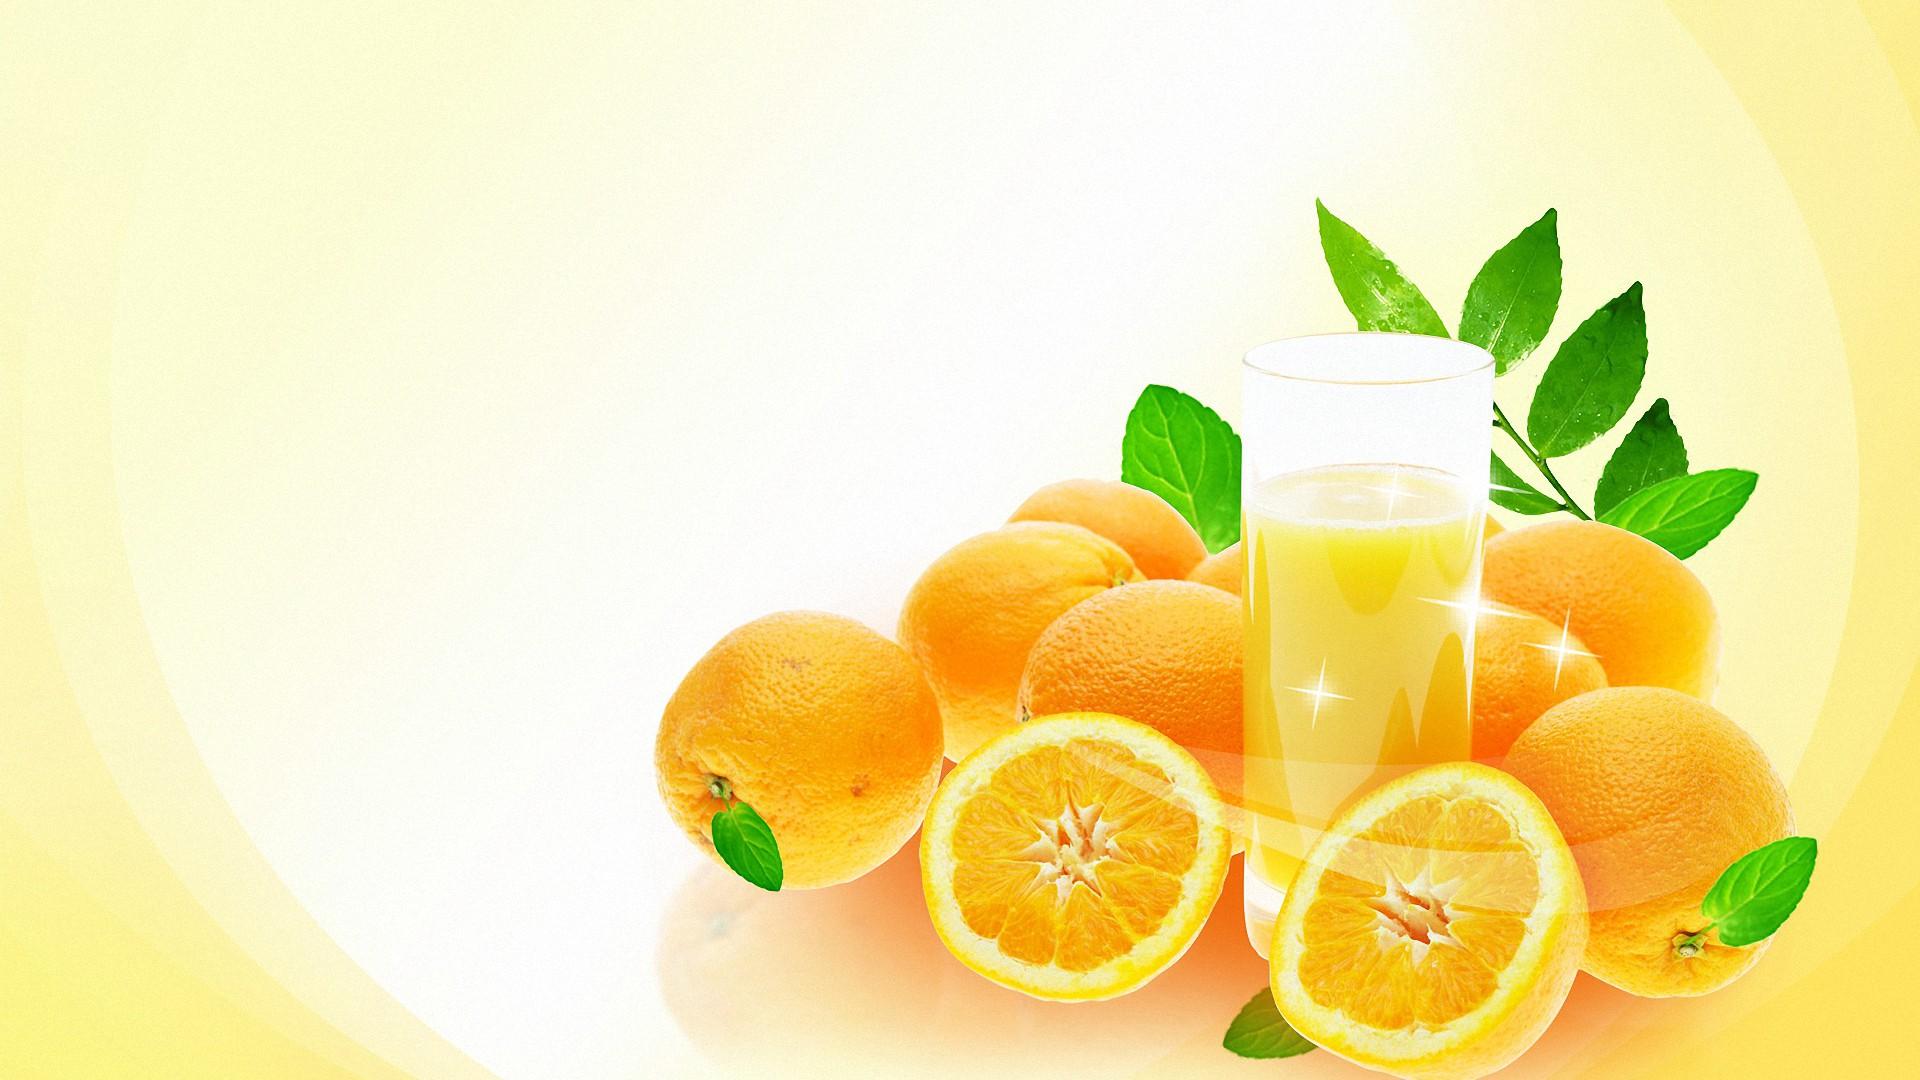 Fresh Juice Images - Free Download on Freepik